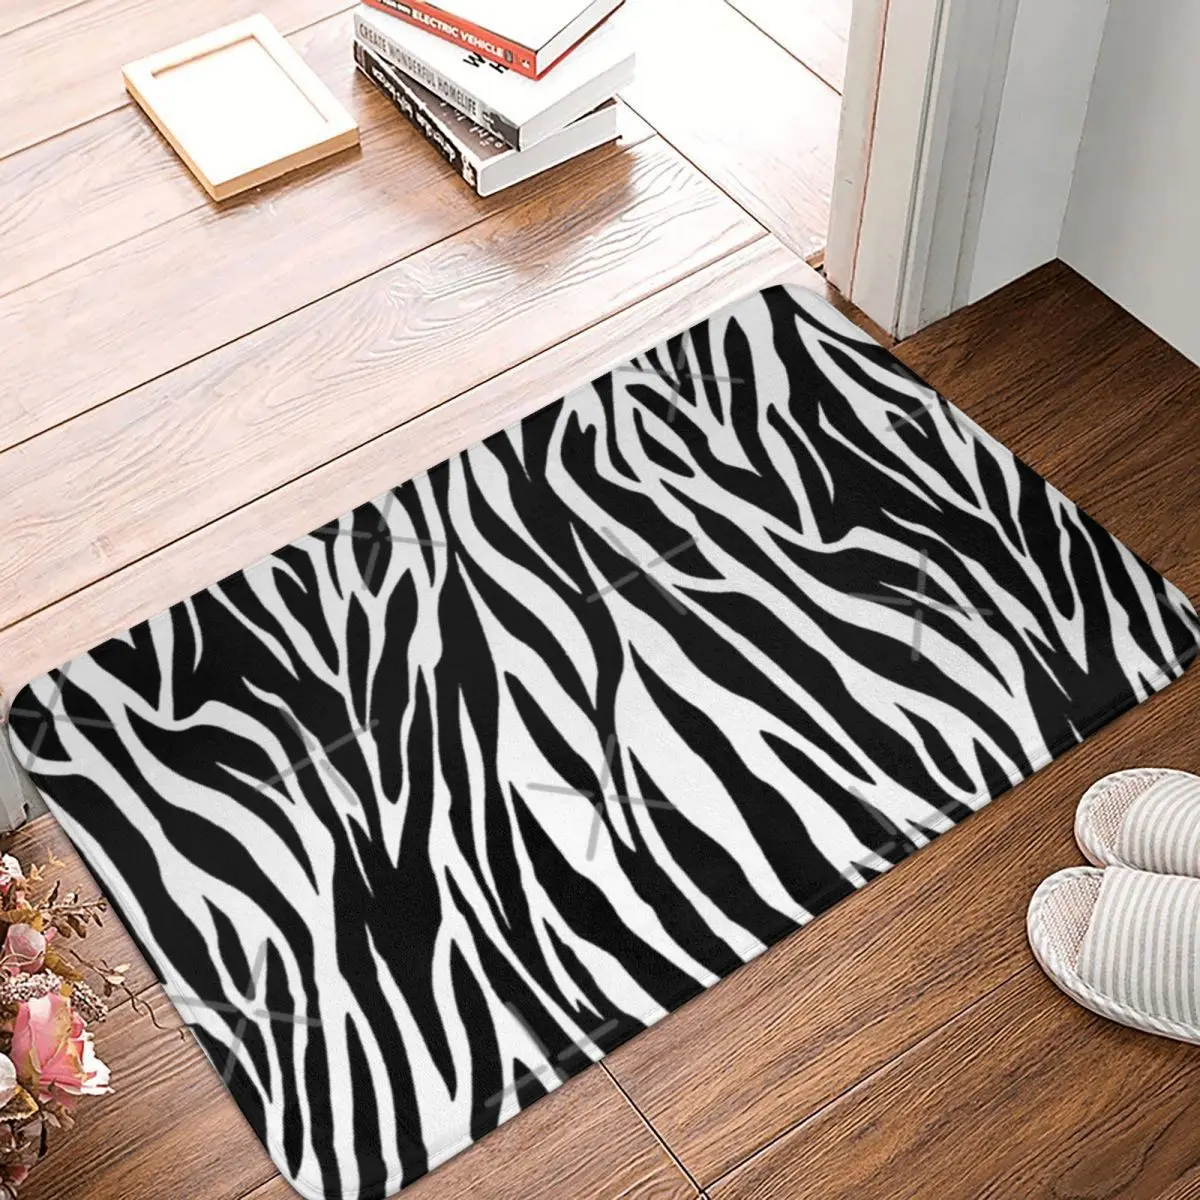 

Красивый ковер Zebra Skin 40x60 см, полиэстер, напольные коврики, милый стиль, прочные праздничные подарки